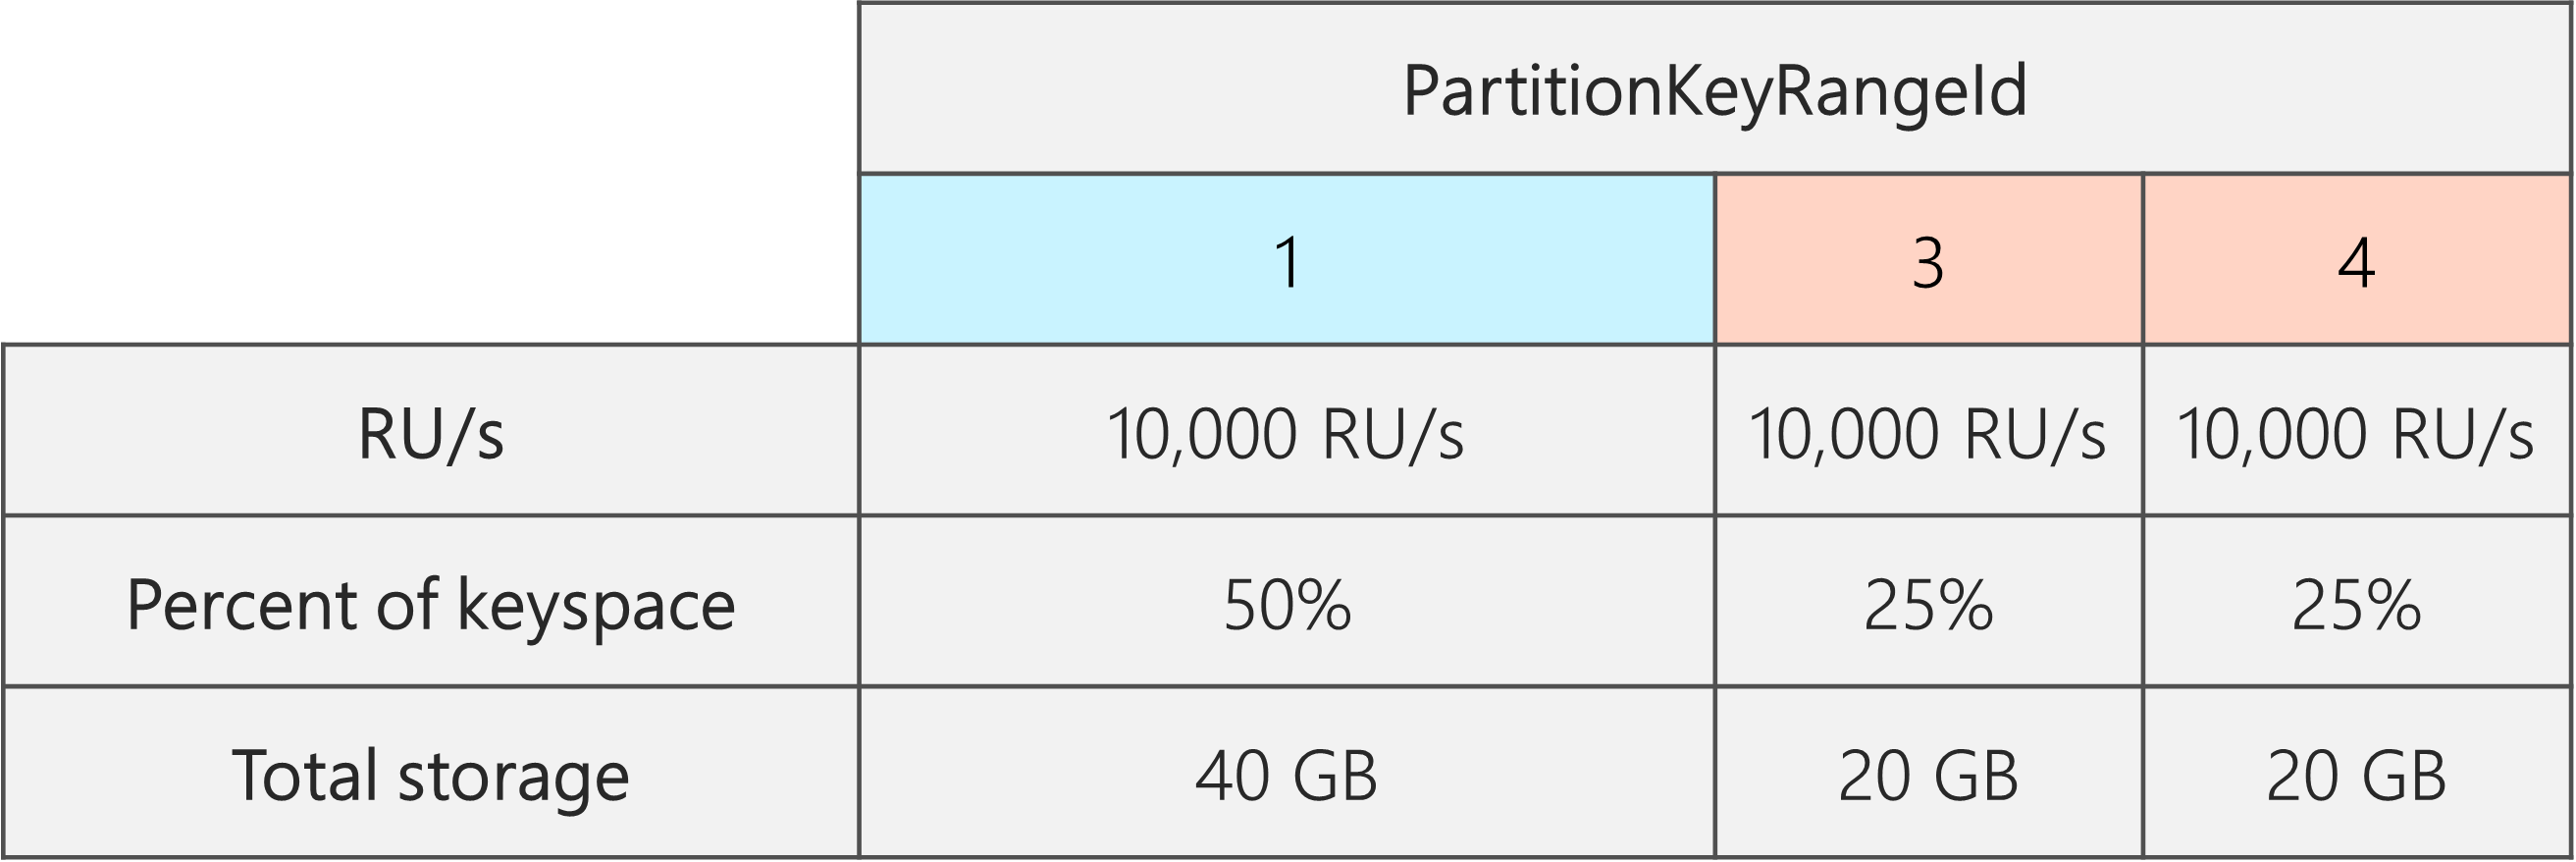 Dopo la divisione, sono presenti 3 PartitionKeyRangeId, ognuno con 10.000 UR/sec. Tuttavia, uno dei PartitionKeyRangeIds ha il 50% del keyspace totale (40 GB), mentre due dei PartitionKeyRangeId hanno il 25% del keyspace totale (20 GB)